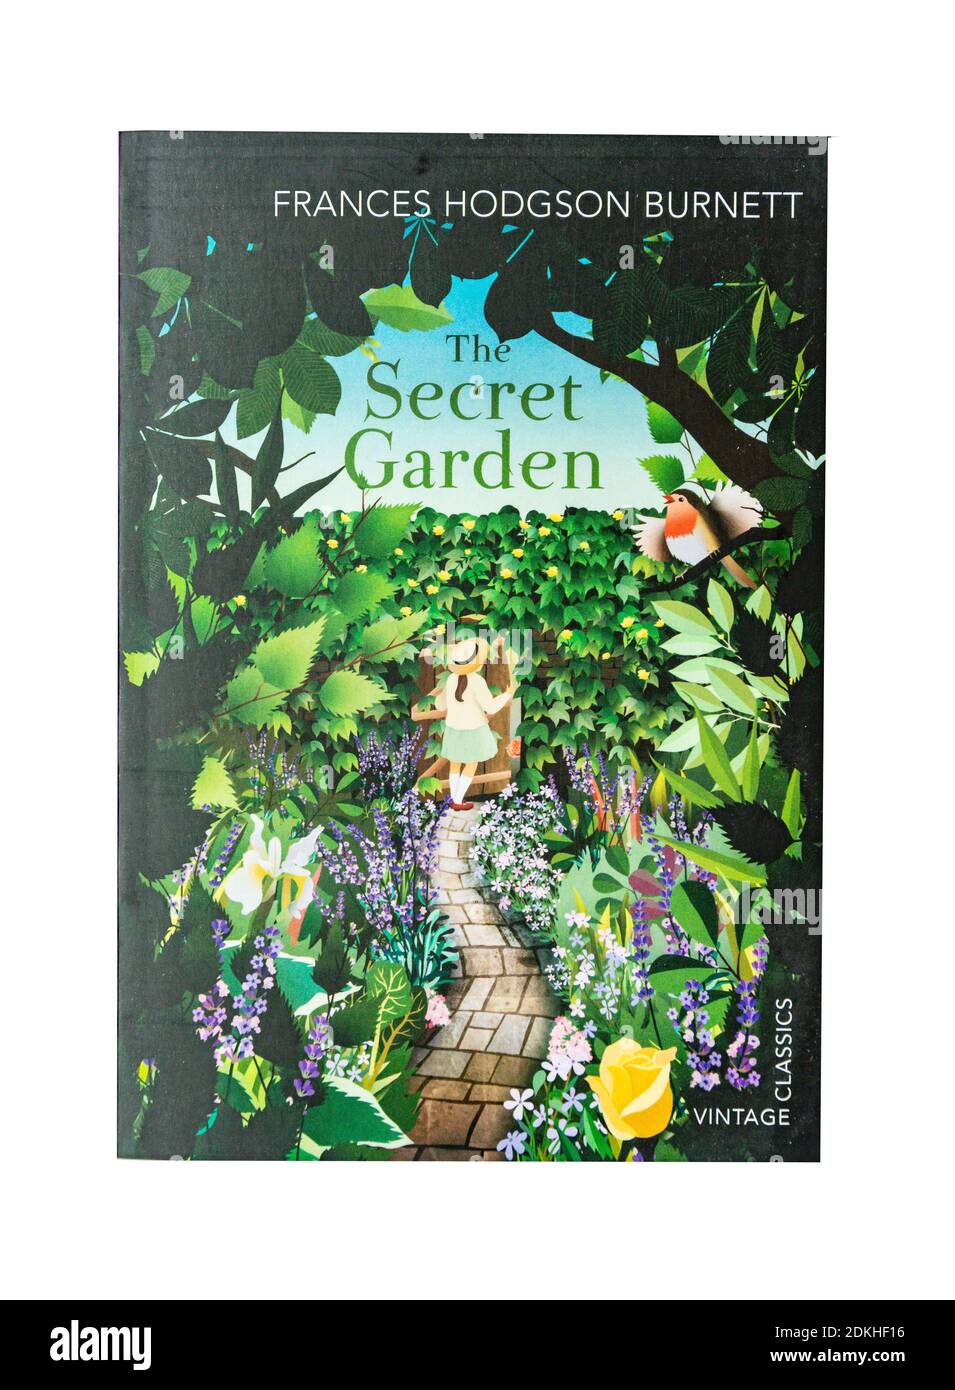 The Secret Garden par Frances Hodgson Burnett, Grand Londres, Angleterre, Royaume-Uni Banque D'Images